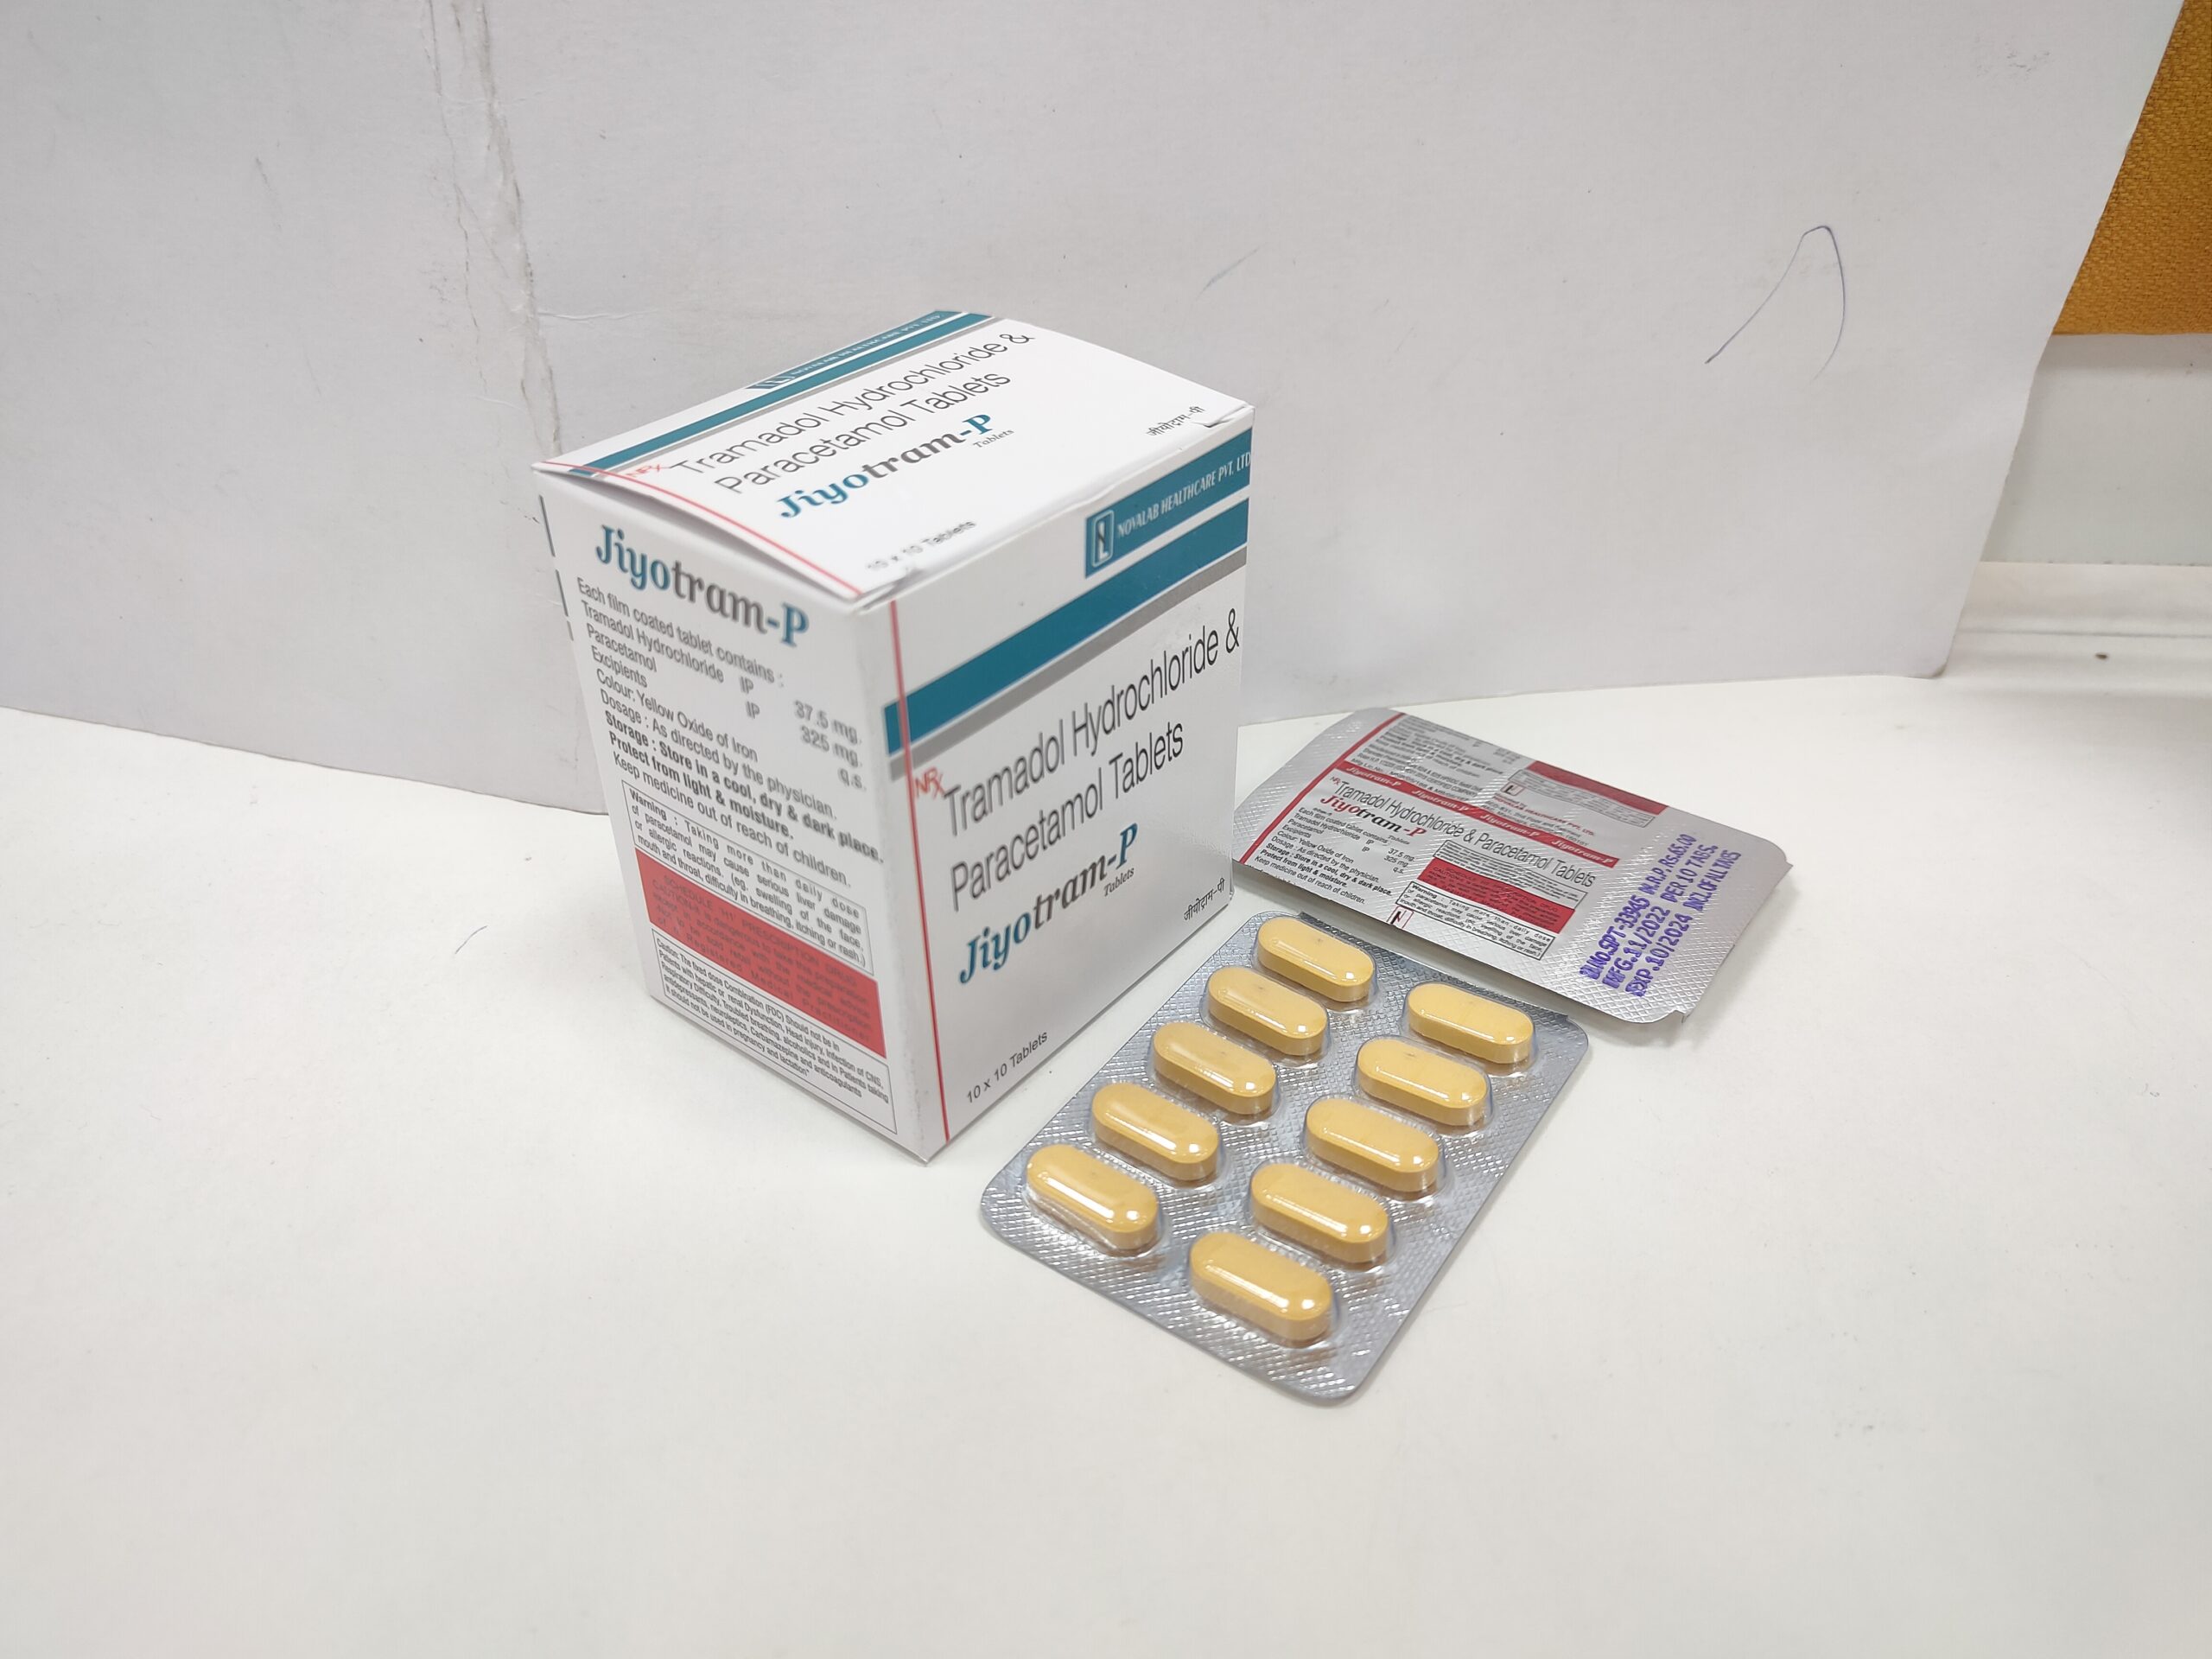 Jiyotram-P -Tramadol Hydrochloride Paracetamol Tablets